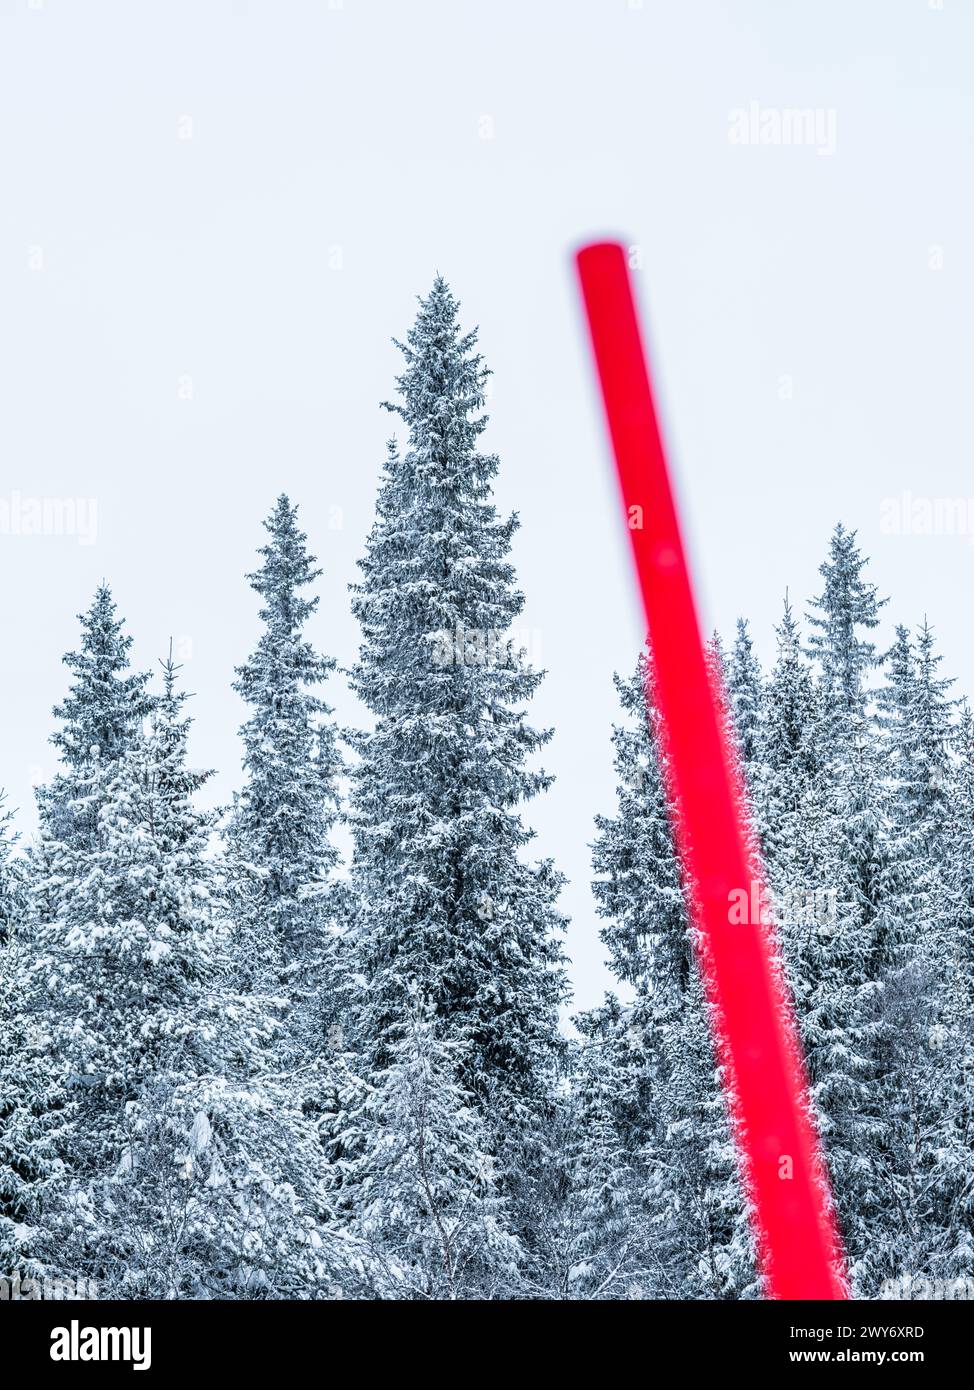 Una vivace pala da neve rossa viene catturata in netto contrasto con lo sfondo sereno di una fitta foresta di conifere ricoperta di neve nella campagna svedese, S. Foto Stock